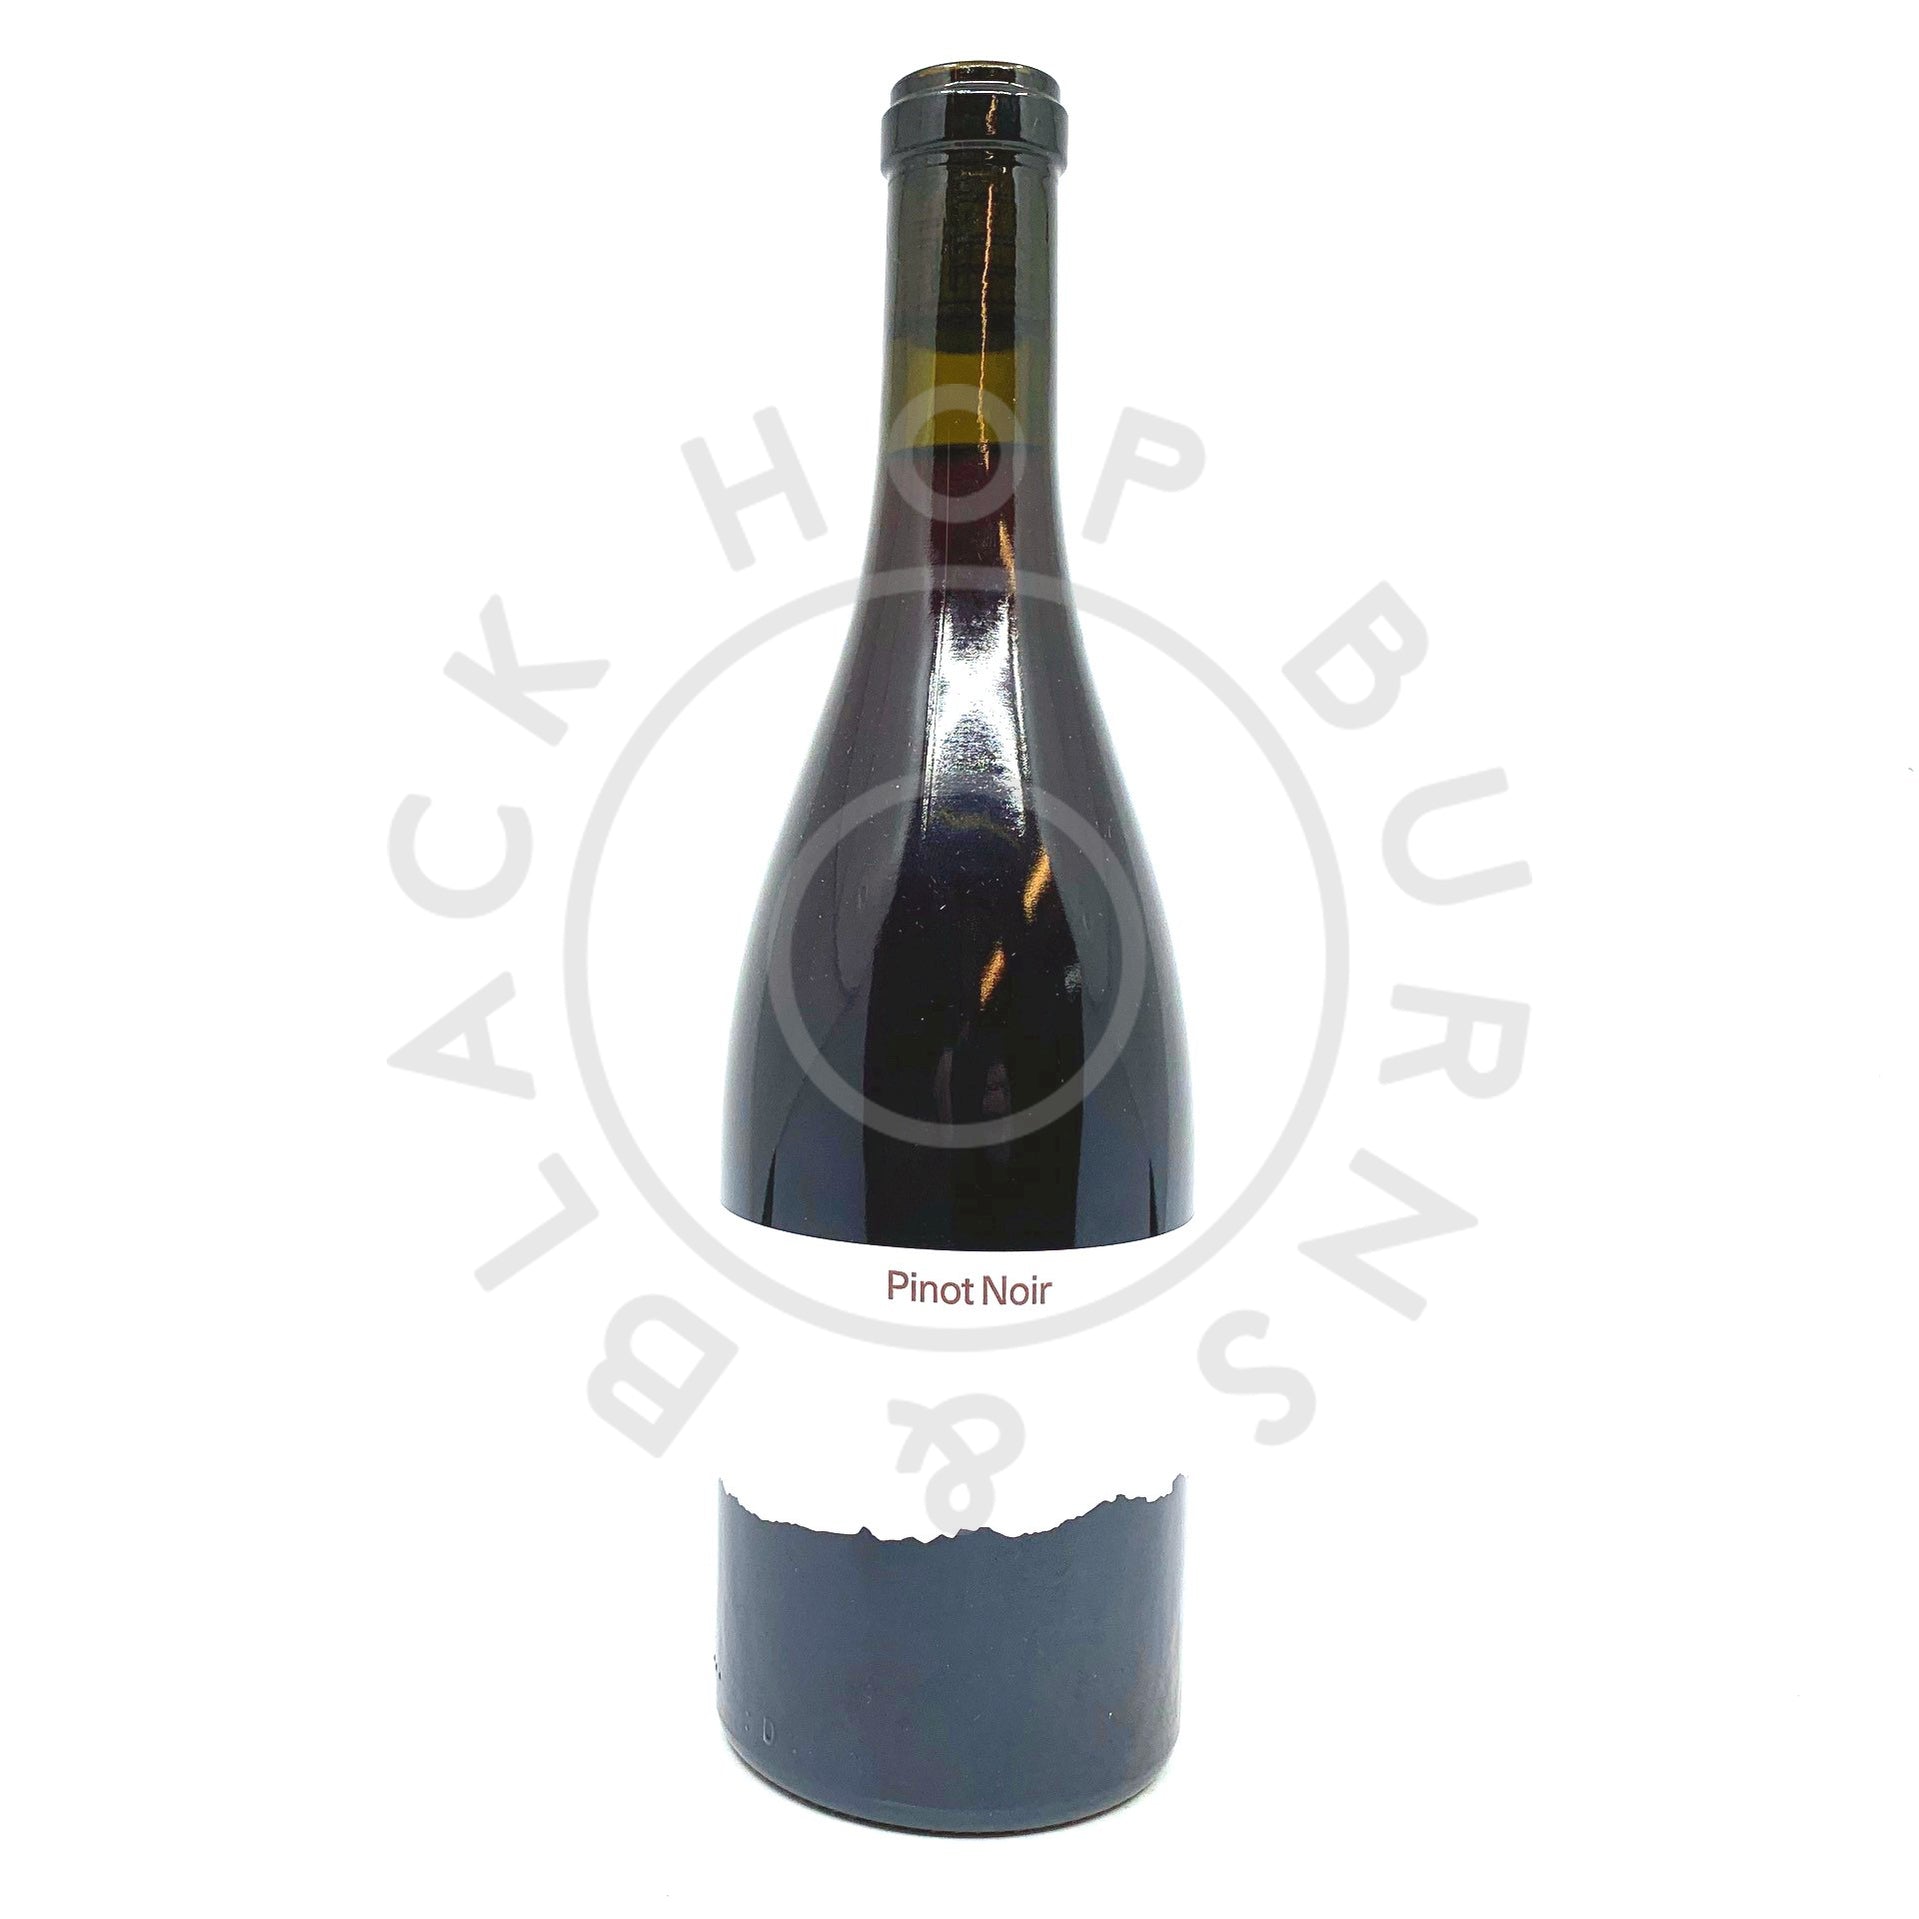 Tillingham Pinot Noir Oaked 2020 11% (750ml)-Hop Burns & Black